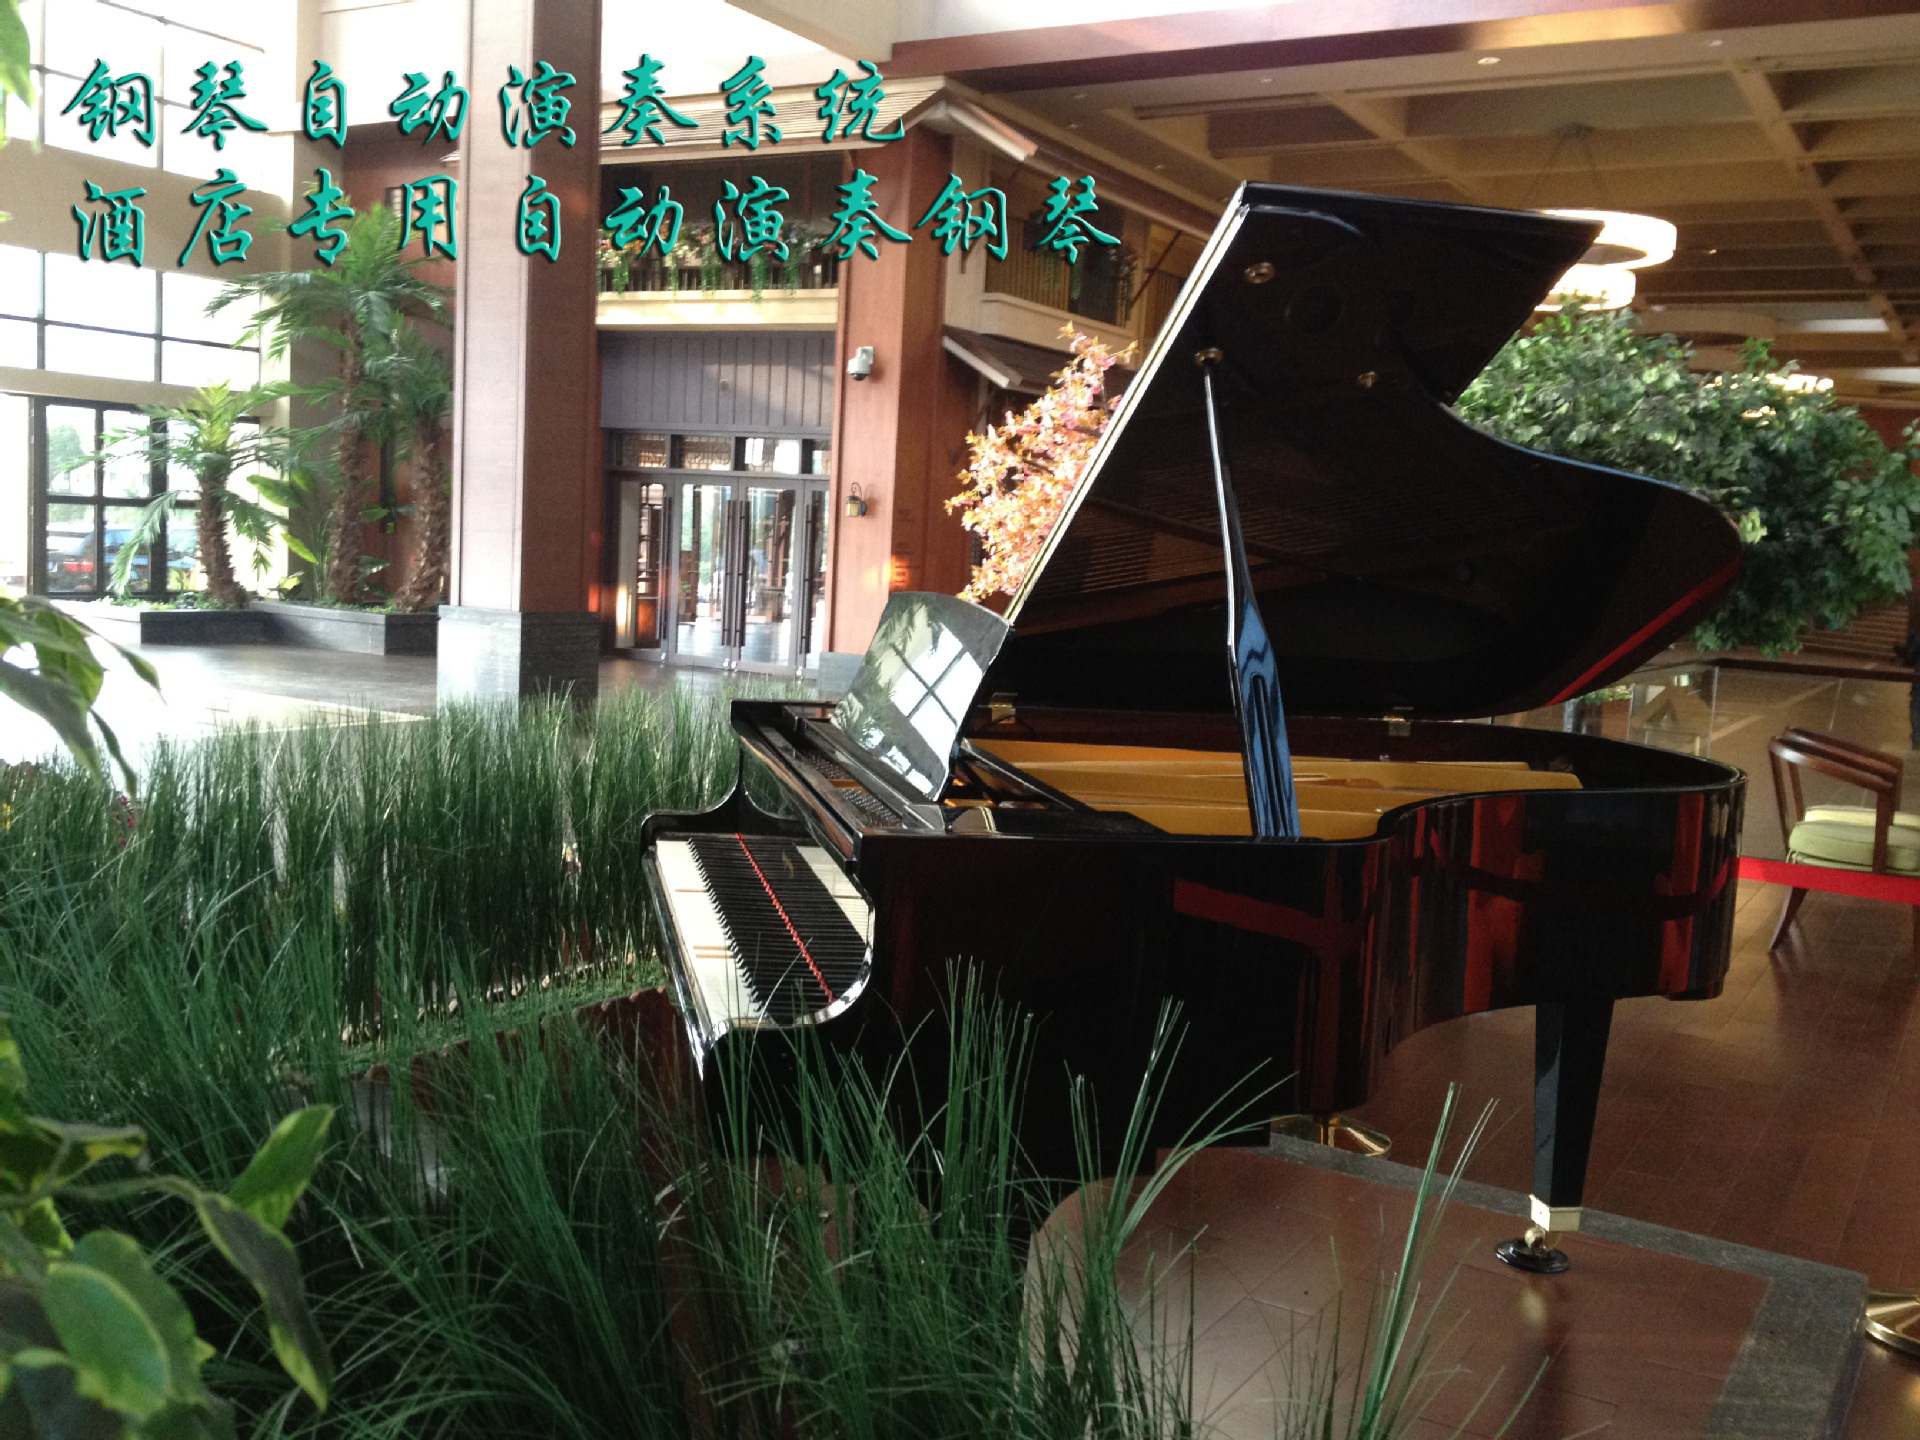 国庆装钢琴自动演奏系统大特惠,各大酒店餐厅